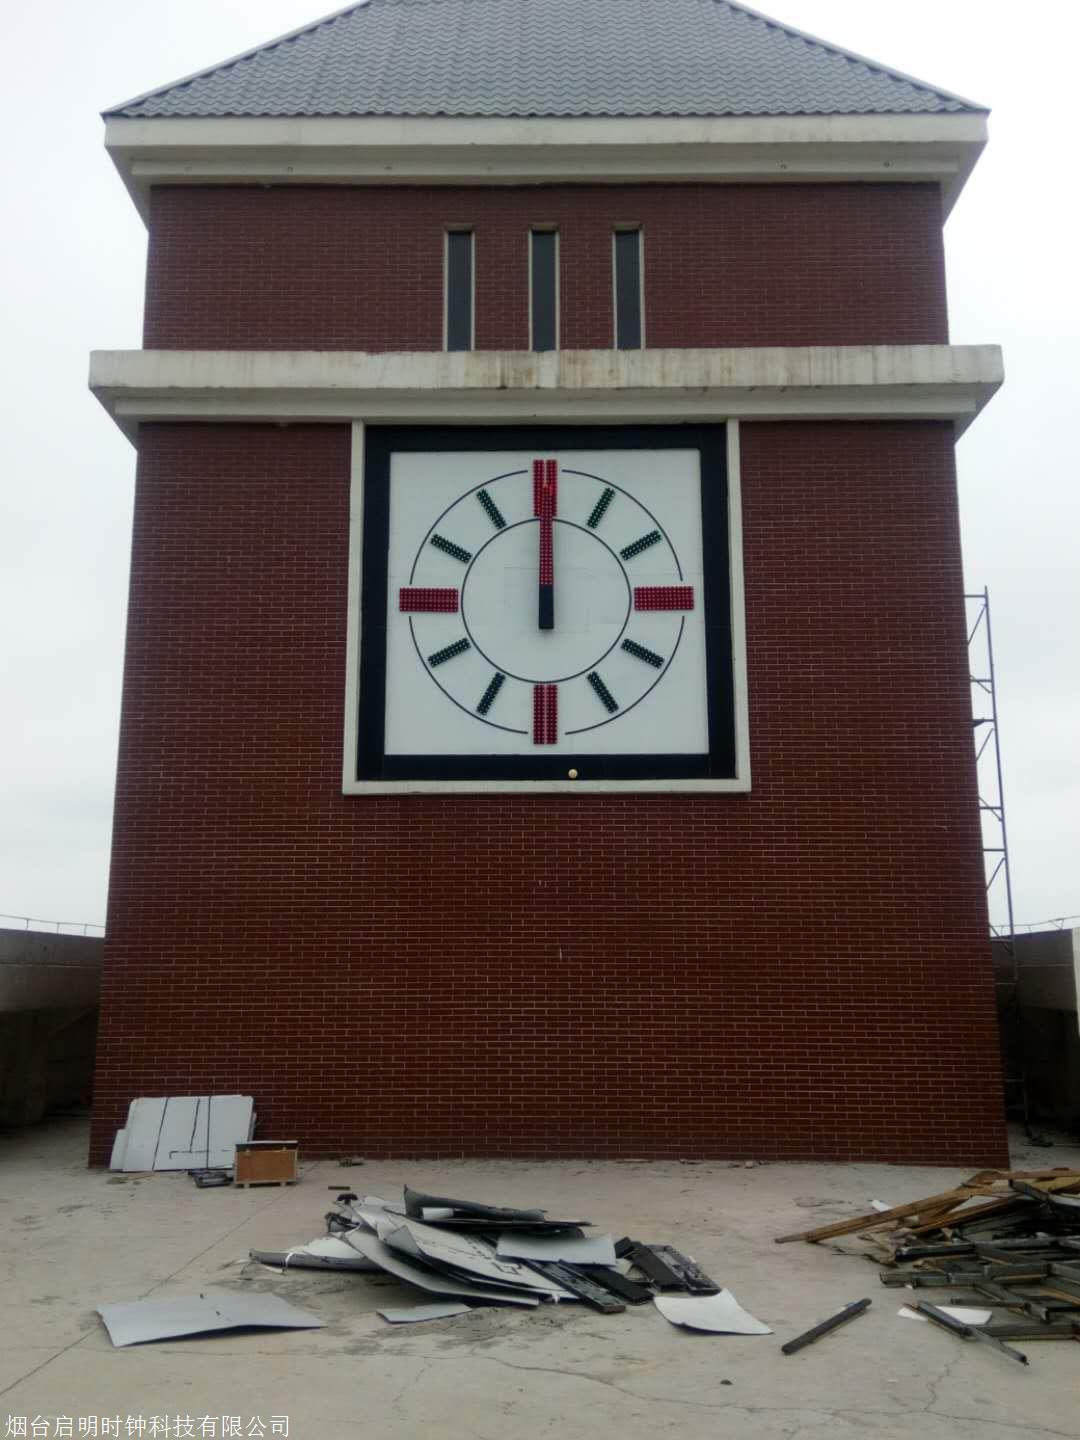 大钟 户外时钟 塔钟 QM-3 建筑塔钟 塔楼大钟 烟台启明时钟3